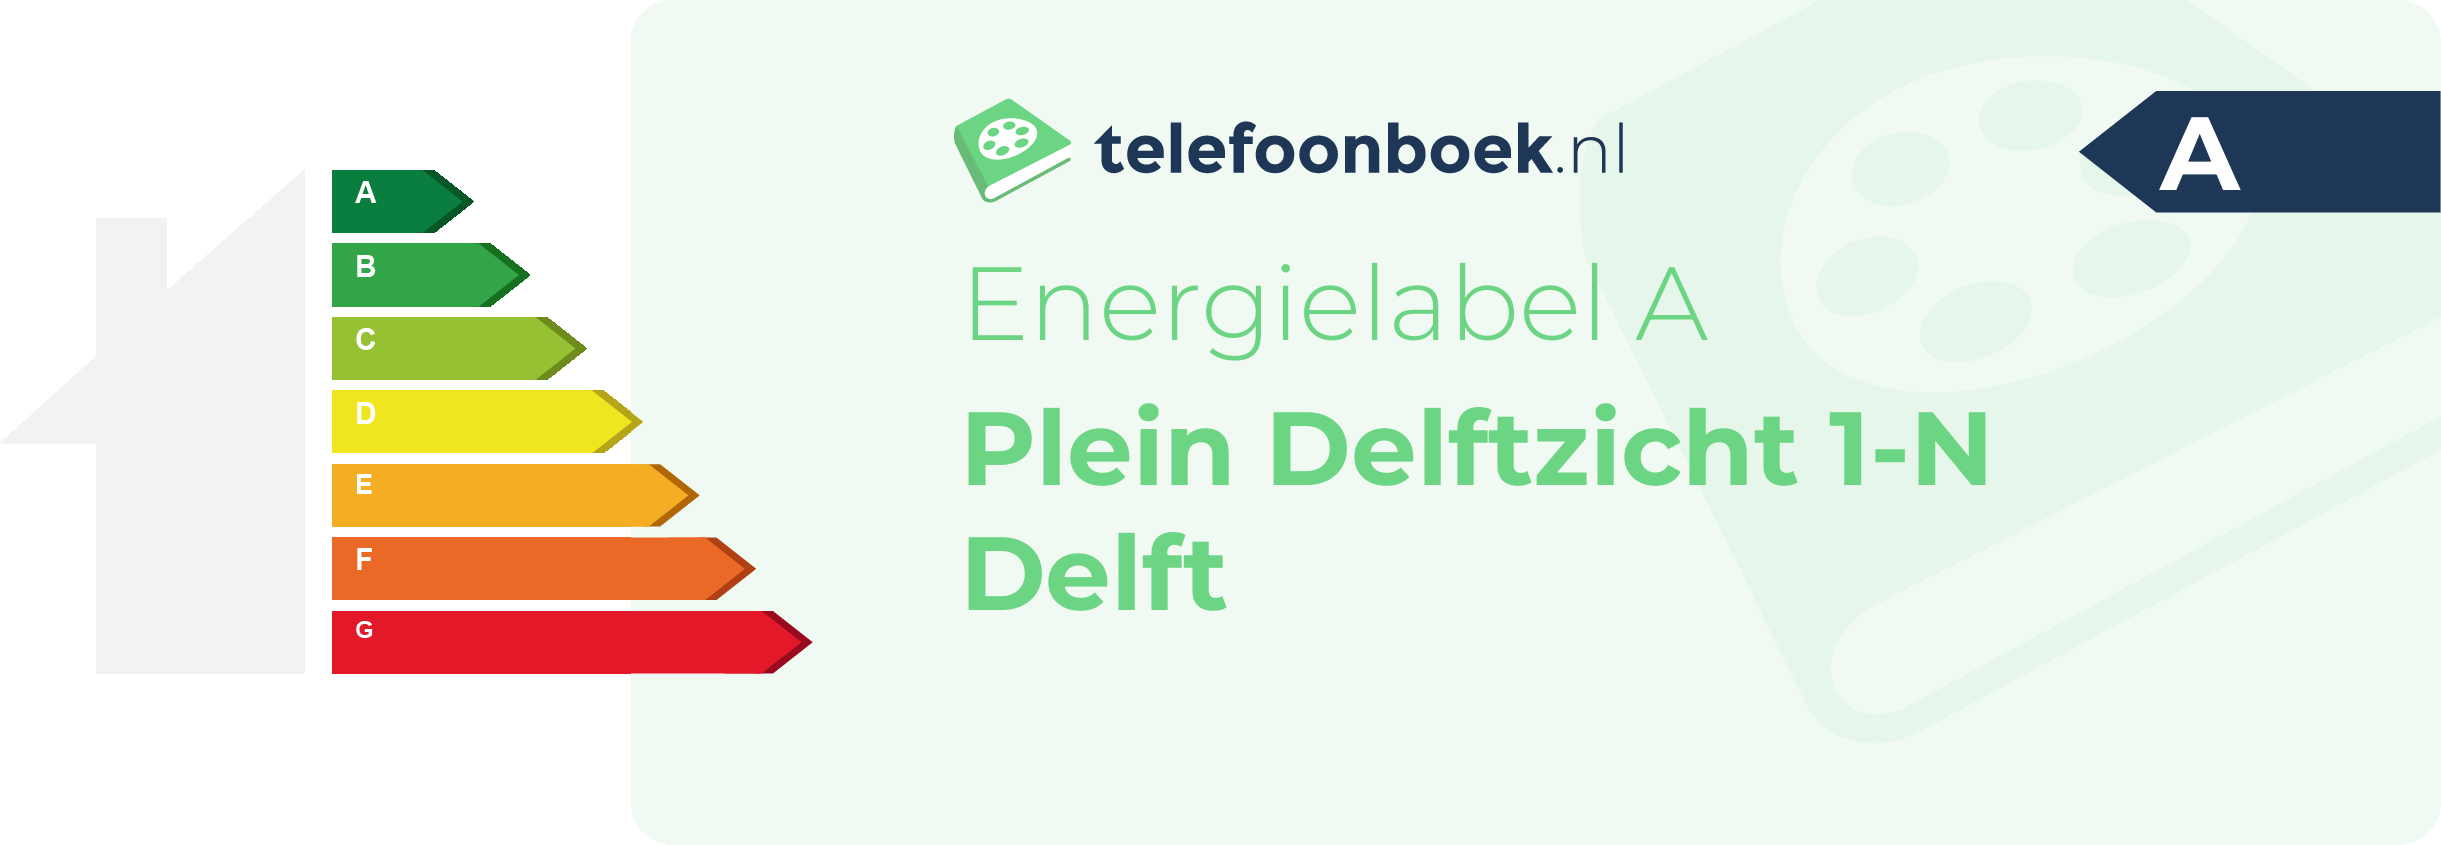 Energielabel Plein Delftzicht 1-N Delft